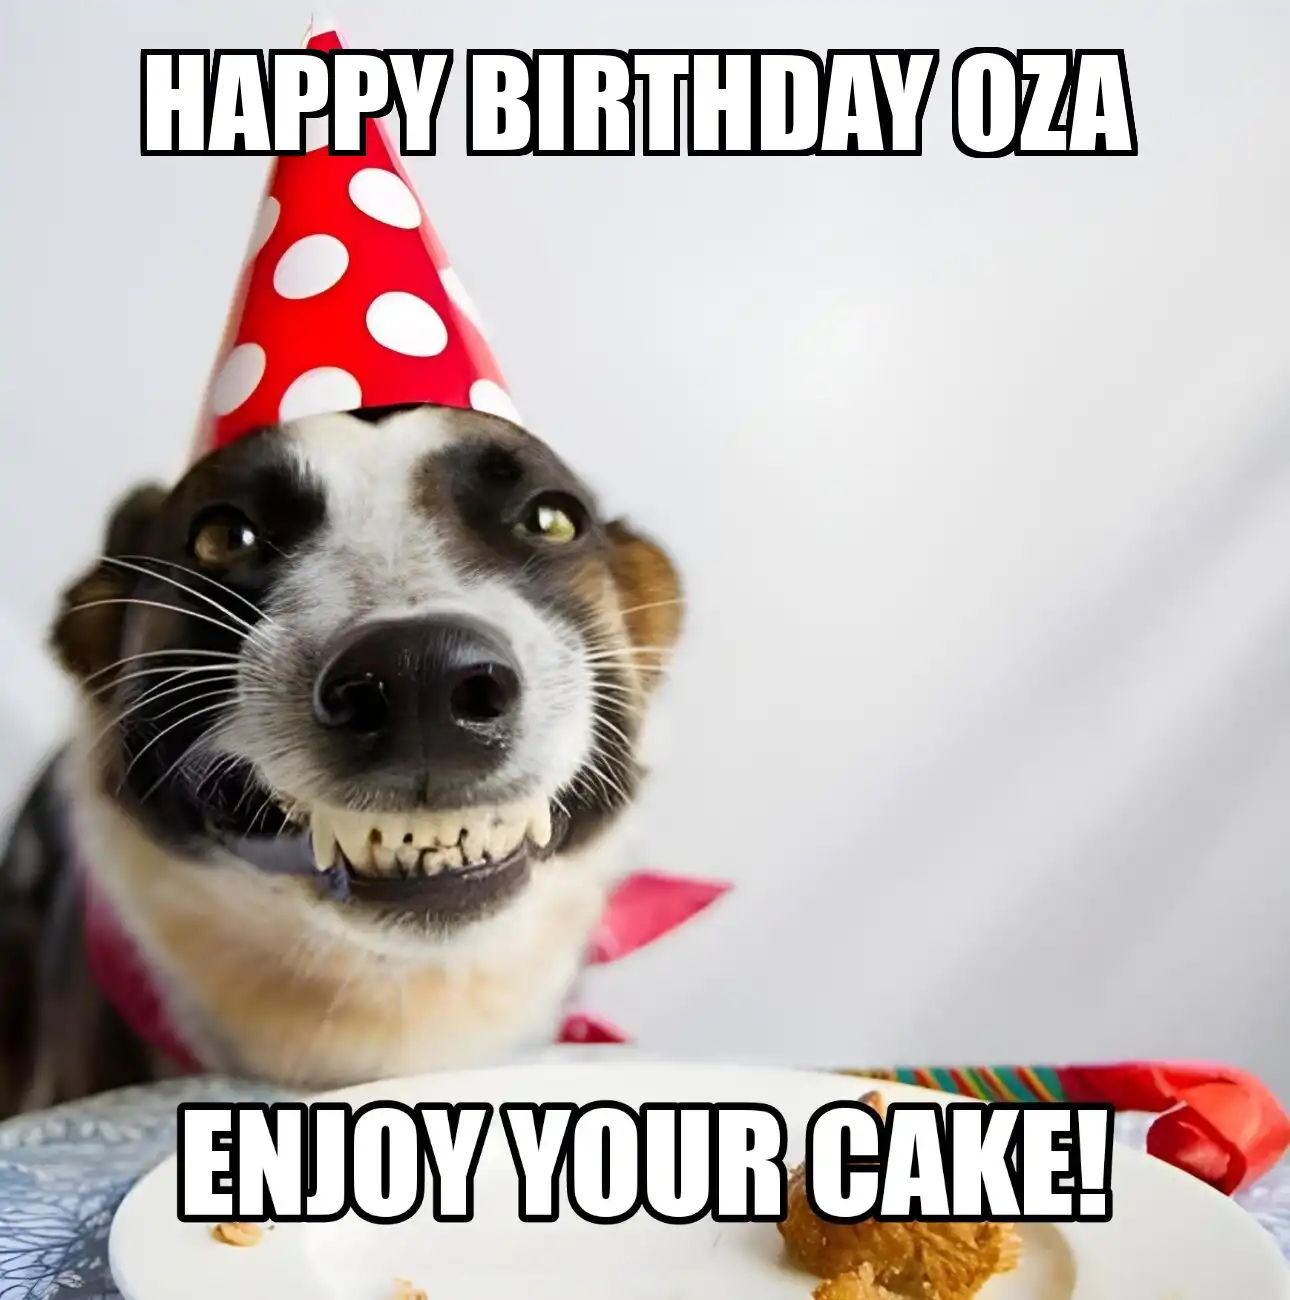 Happy Birthday Oza Enjoy Your Cake Dog Meme